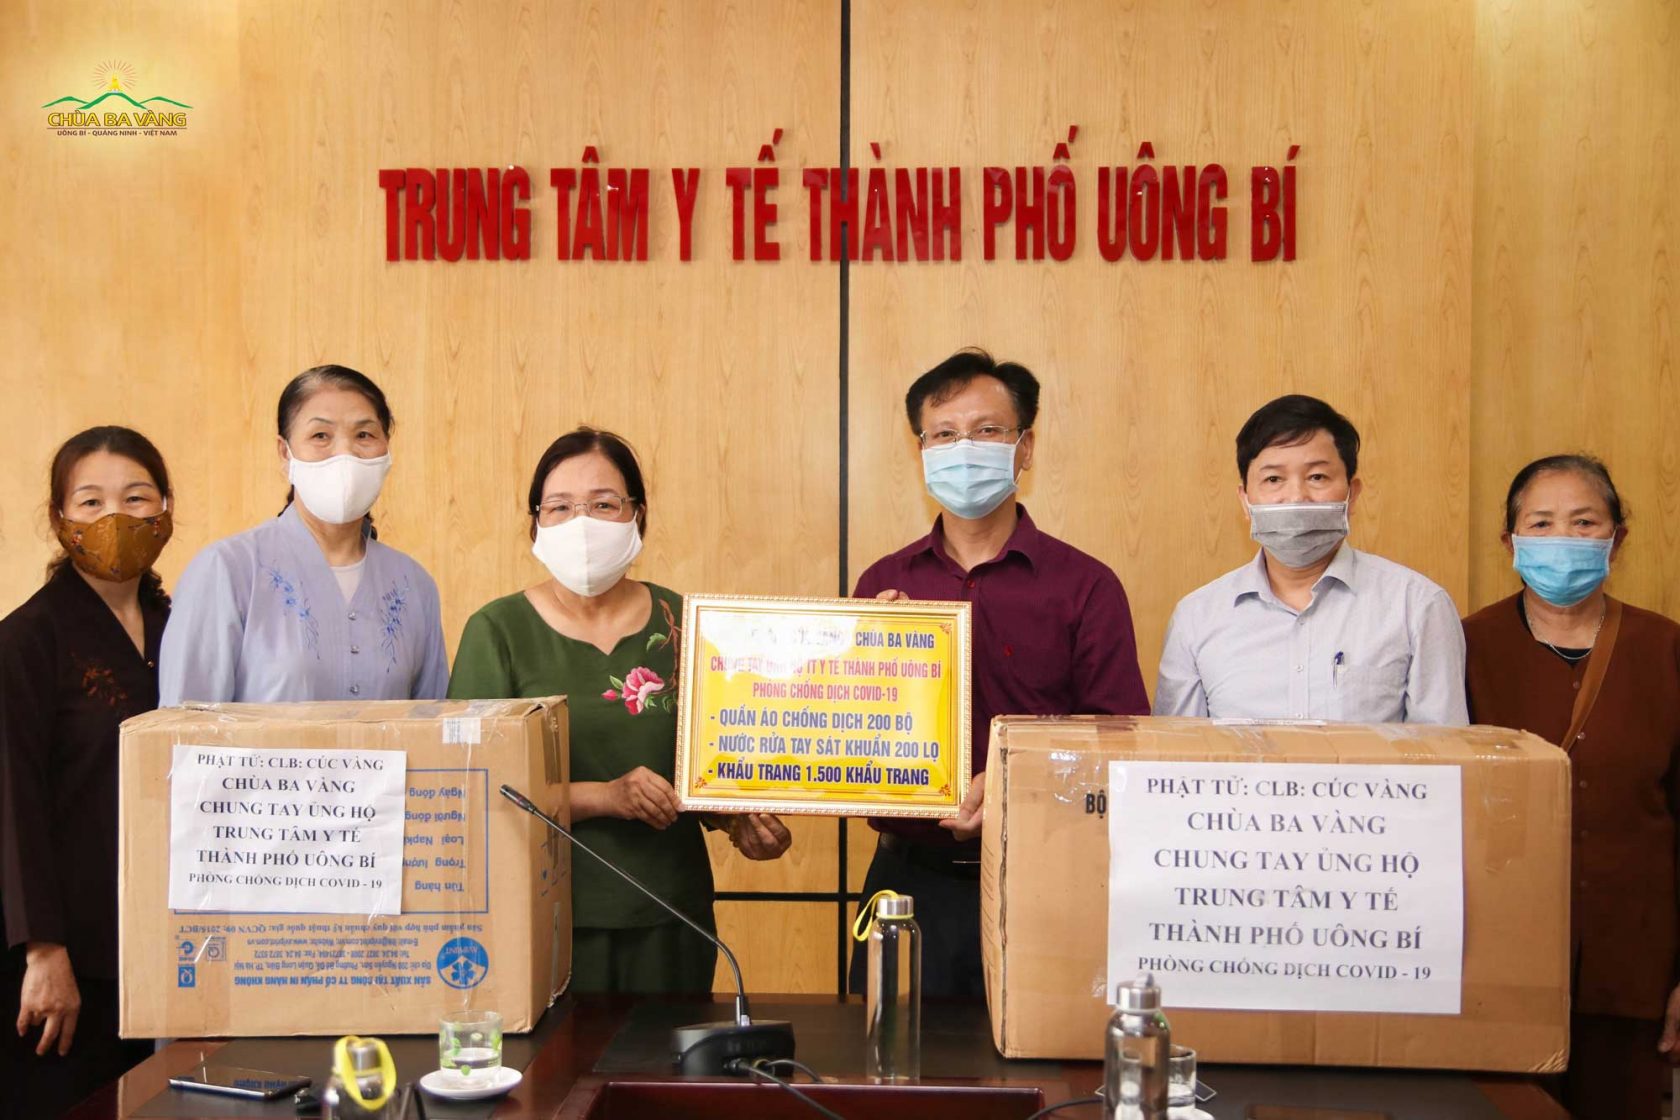 CLB Cúc Vàng - Tập Tu Lục Hòa đã ủng hộ Trung tâm Y tế TP Uông Bí - Quảng Ninh 200 bộ quần áo chống dịch; 200 lọ nước rửa tay sát khuẩn và 1.500 chiếc khẩu trang y tế